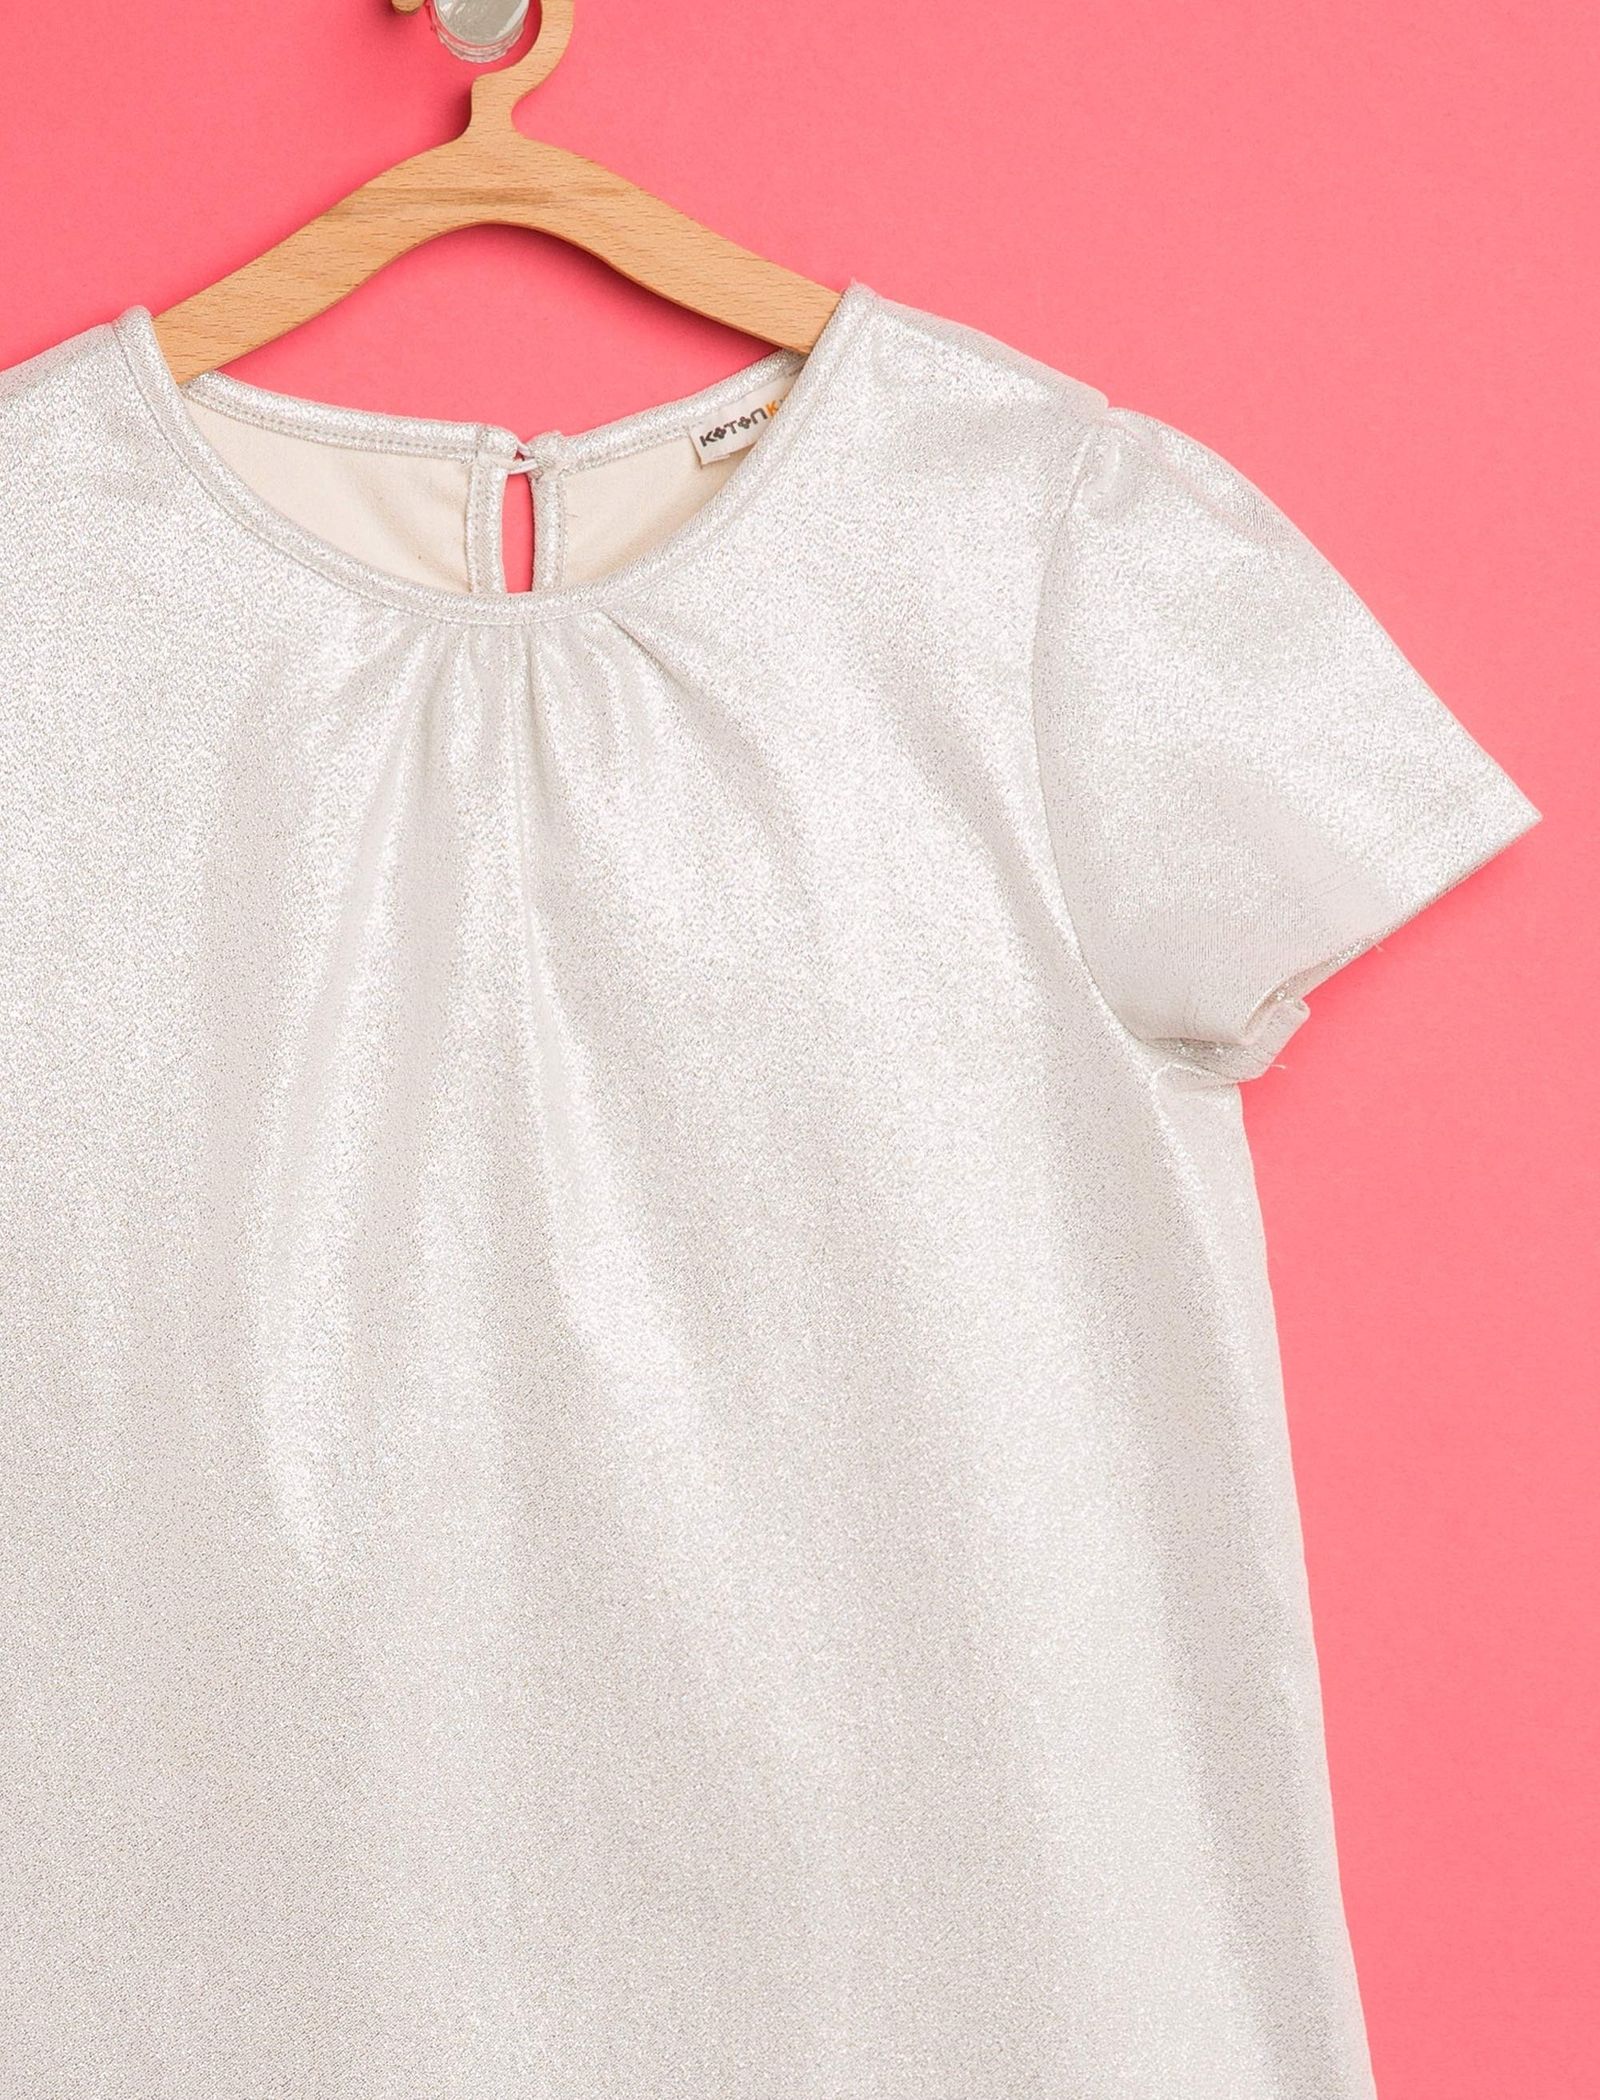 پیراهن روزمره دخترانه - کوتون - طوسي روشن - 4